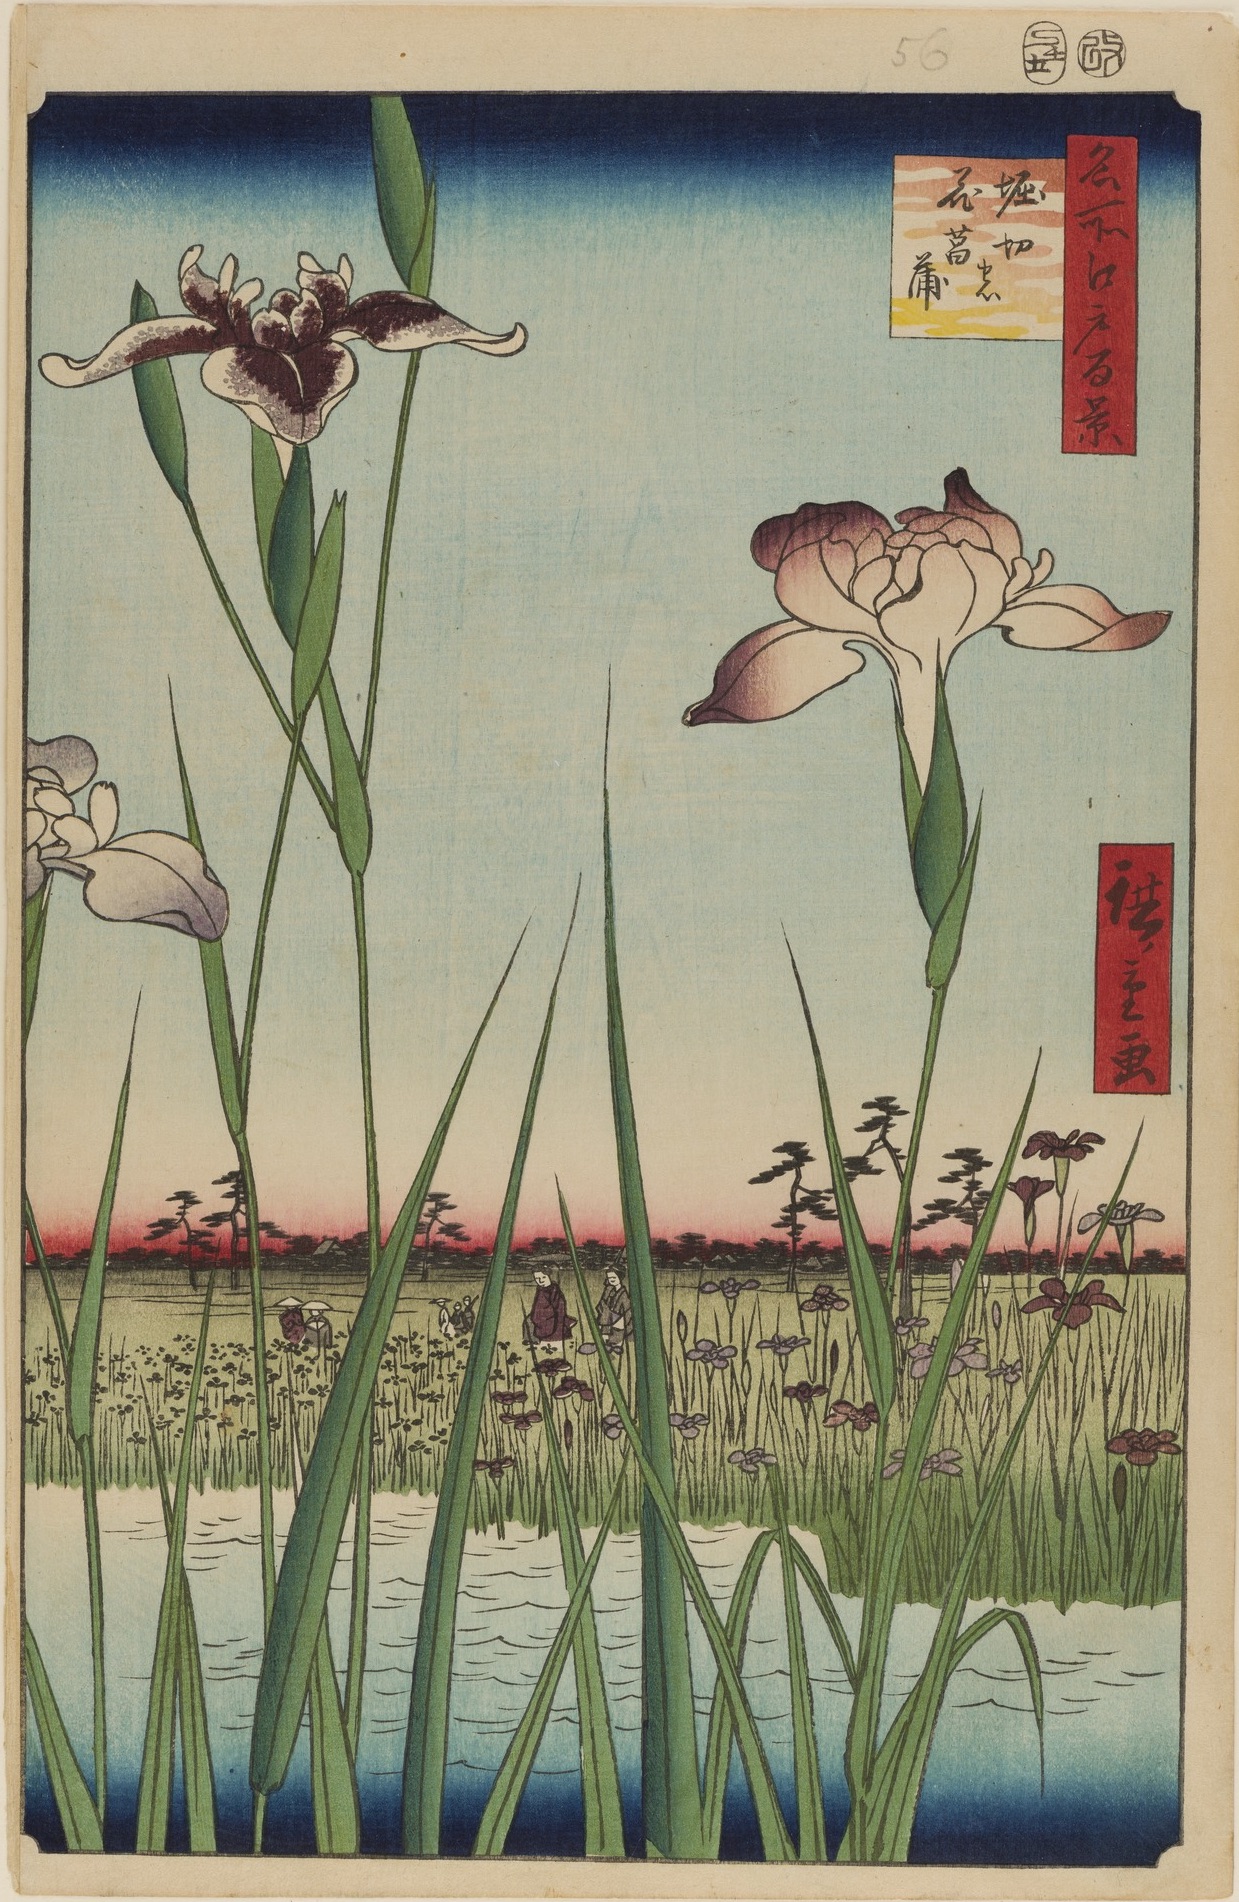 名所江戸百景　堀切の花菖蒲 by  Hiroshige - 1856年 - 34 x 22.9 cm 